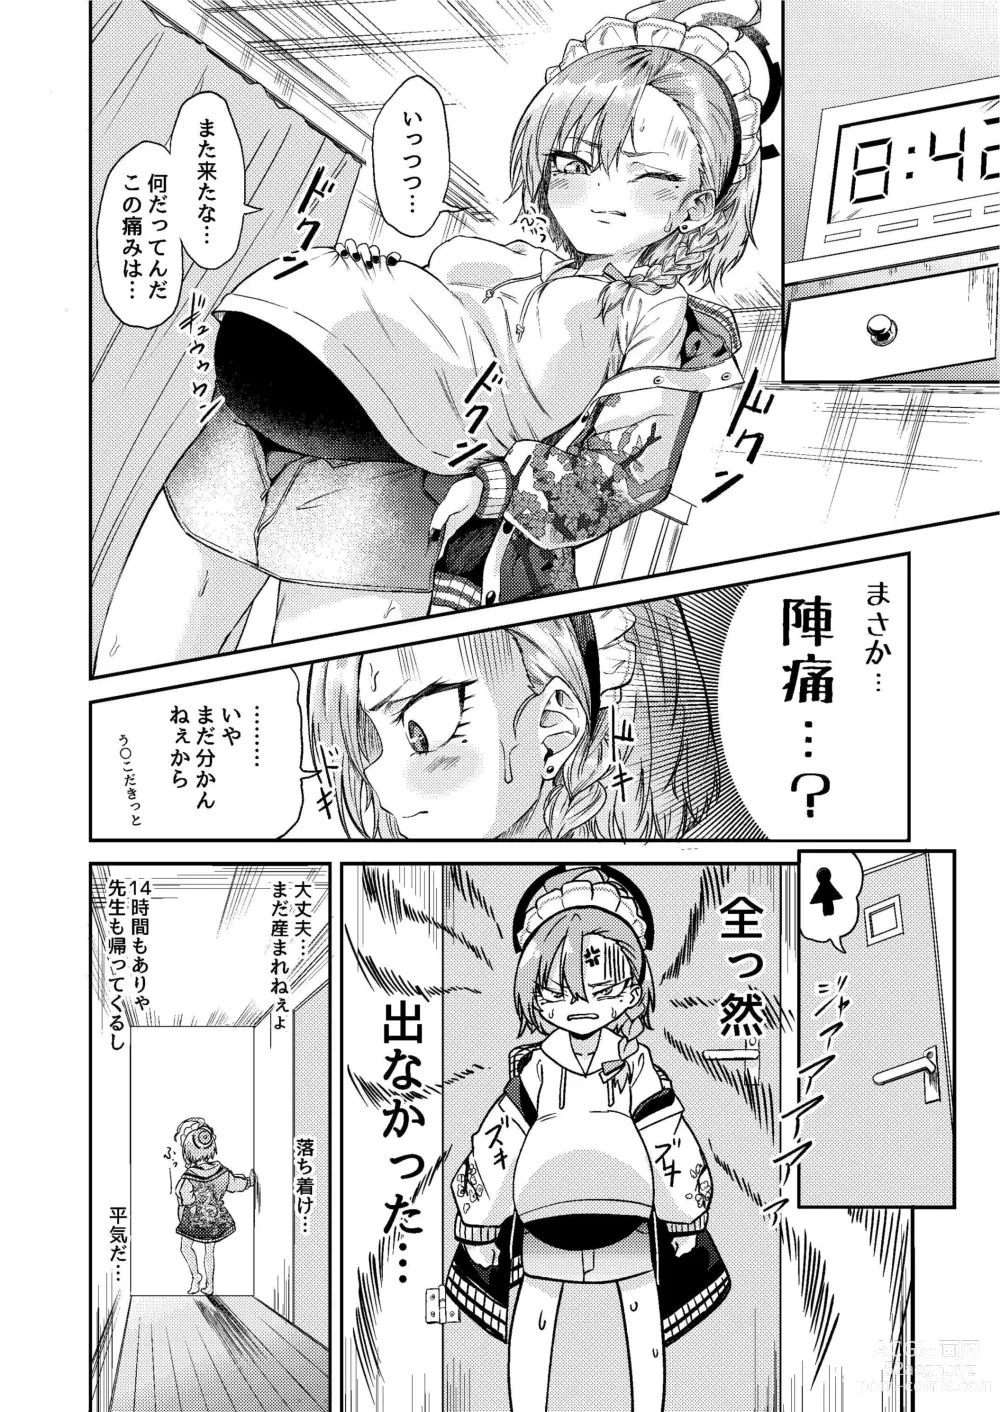 Page 4 of doujinshi Sensei Wari Umarechau